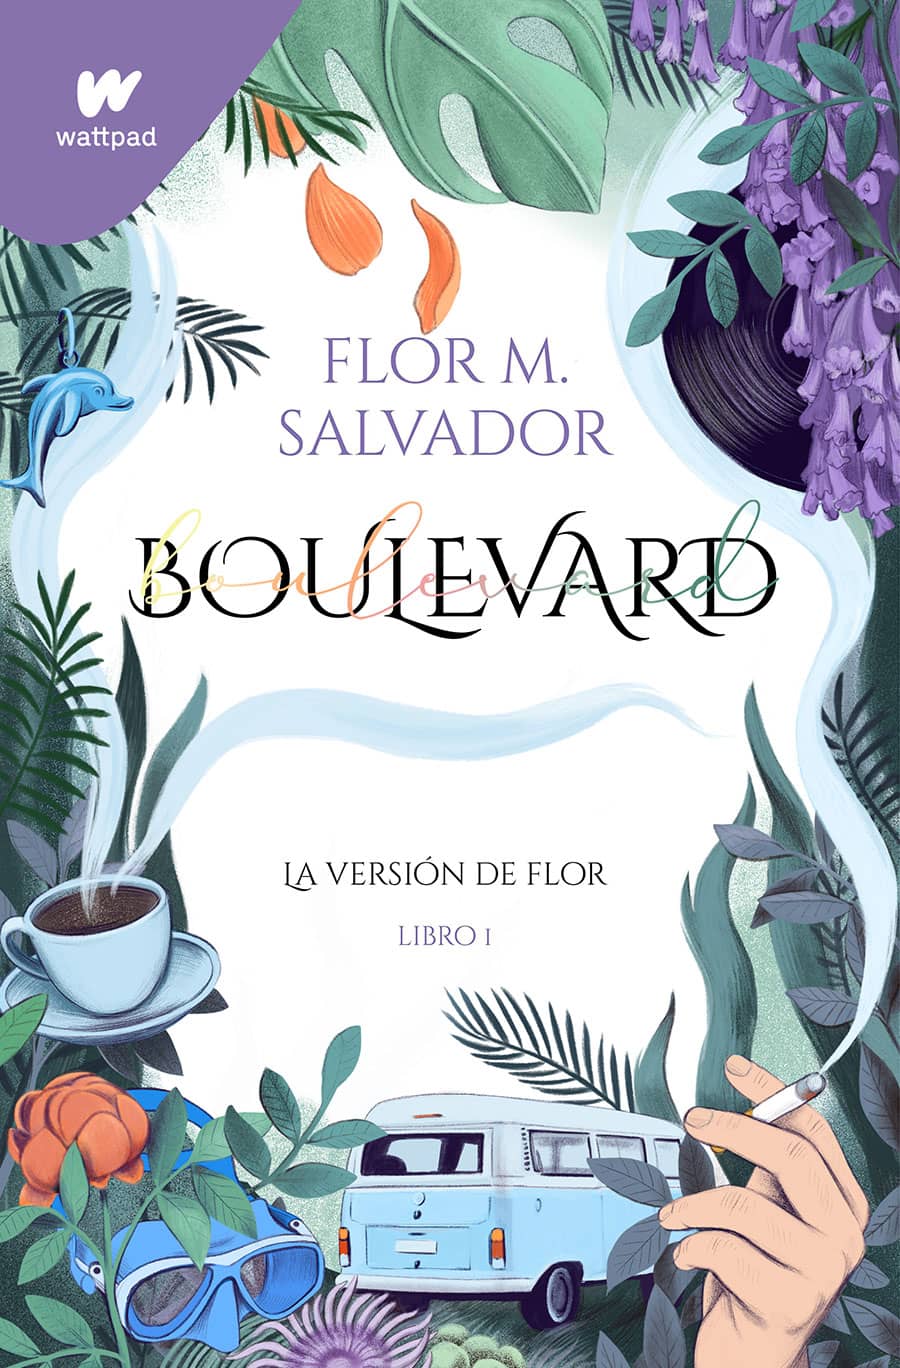 Cover Illustration for Boulevard I, Flor M. Salvador